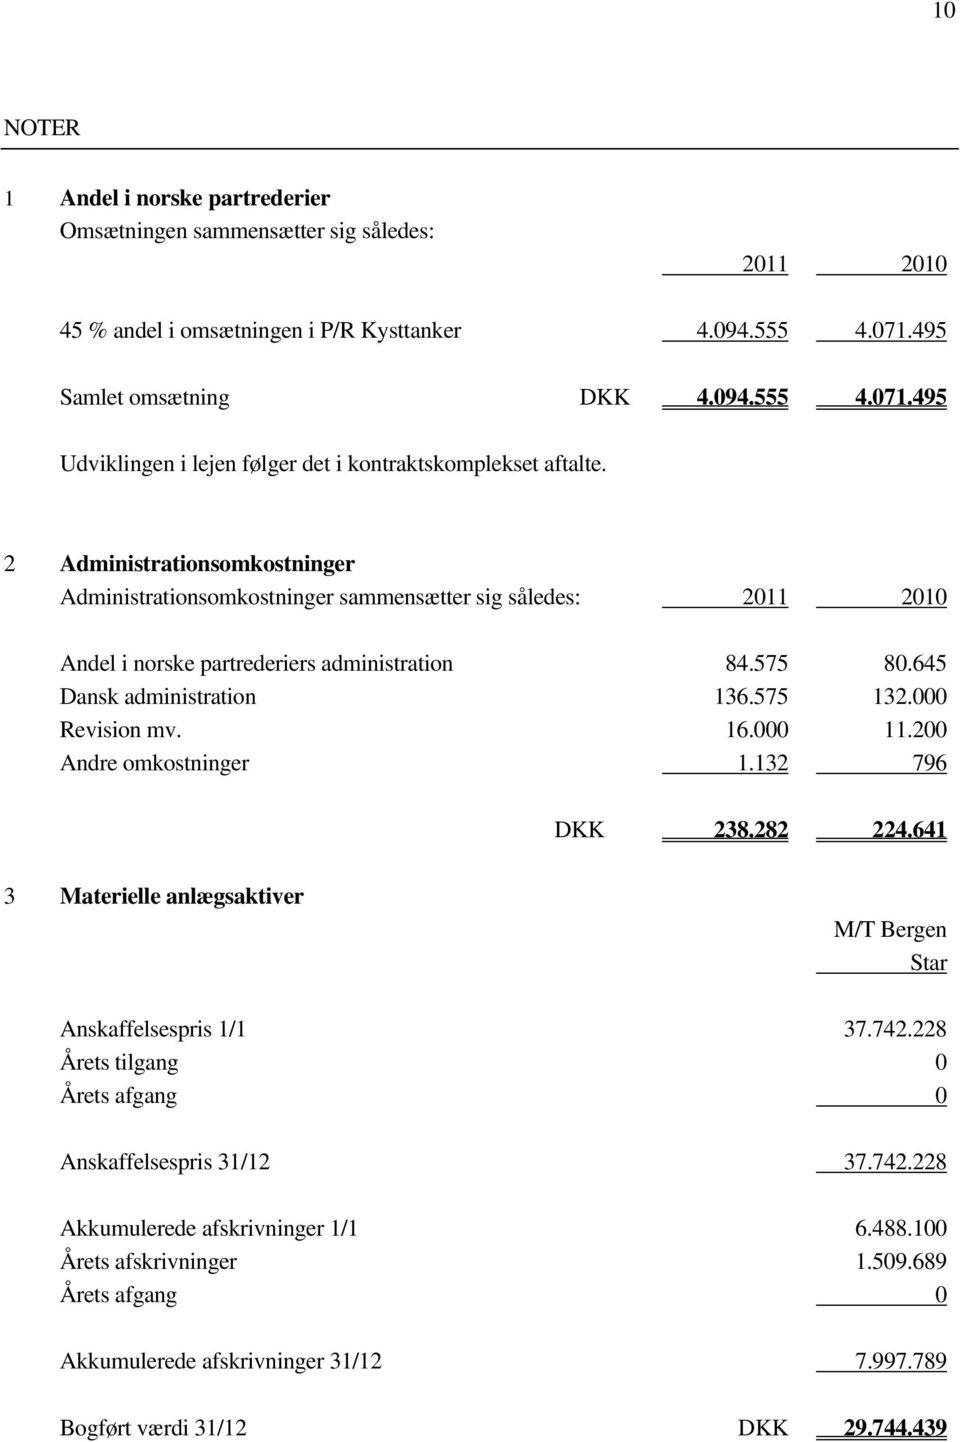 2 Administrationsomkostninger Administrationsomkostninger sammensætter sig således: 2011 2010 Andel i norske partrederiers administration 84.575 80.645 Dansk administration 136.575 132.